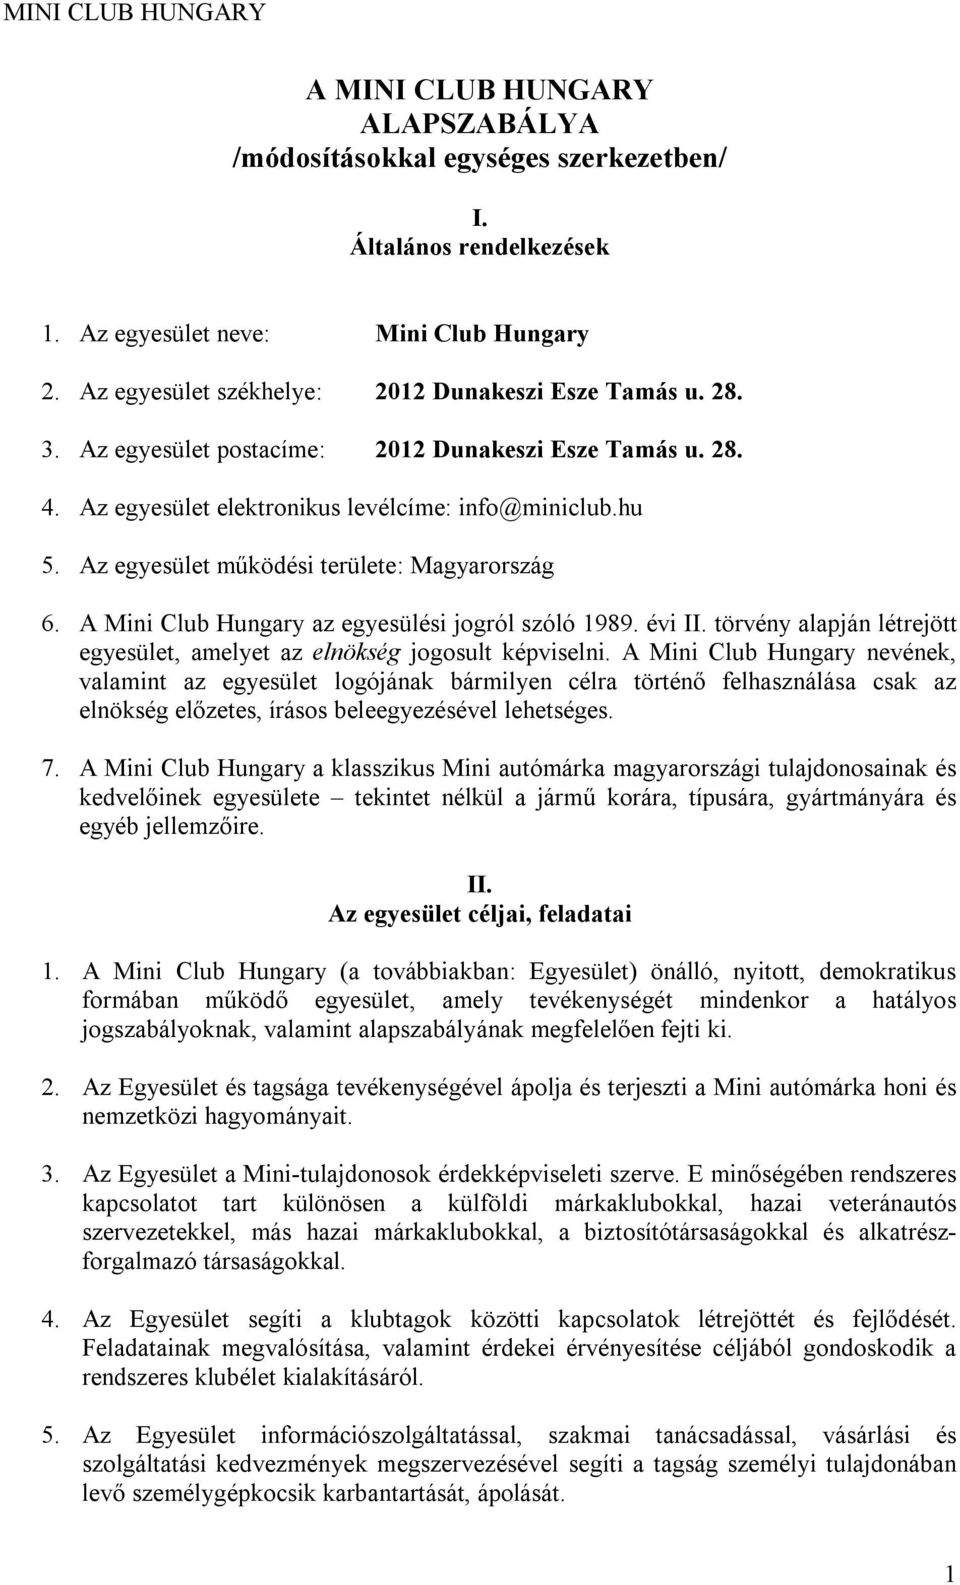 A Mini Club Hungary az egyesülési jogról szóló 1989. évi II. törvény alapján létrejött egyesület, amelyet az elnökség jogosult képviselni.